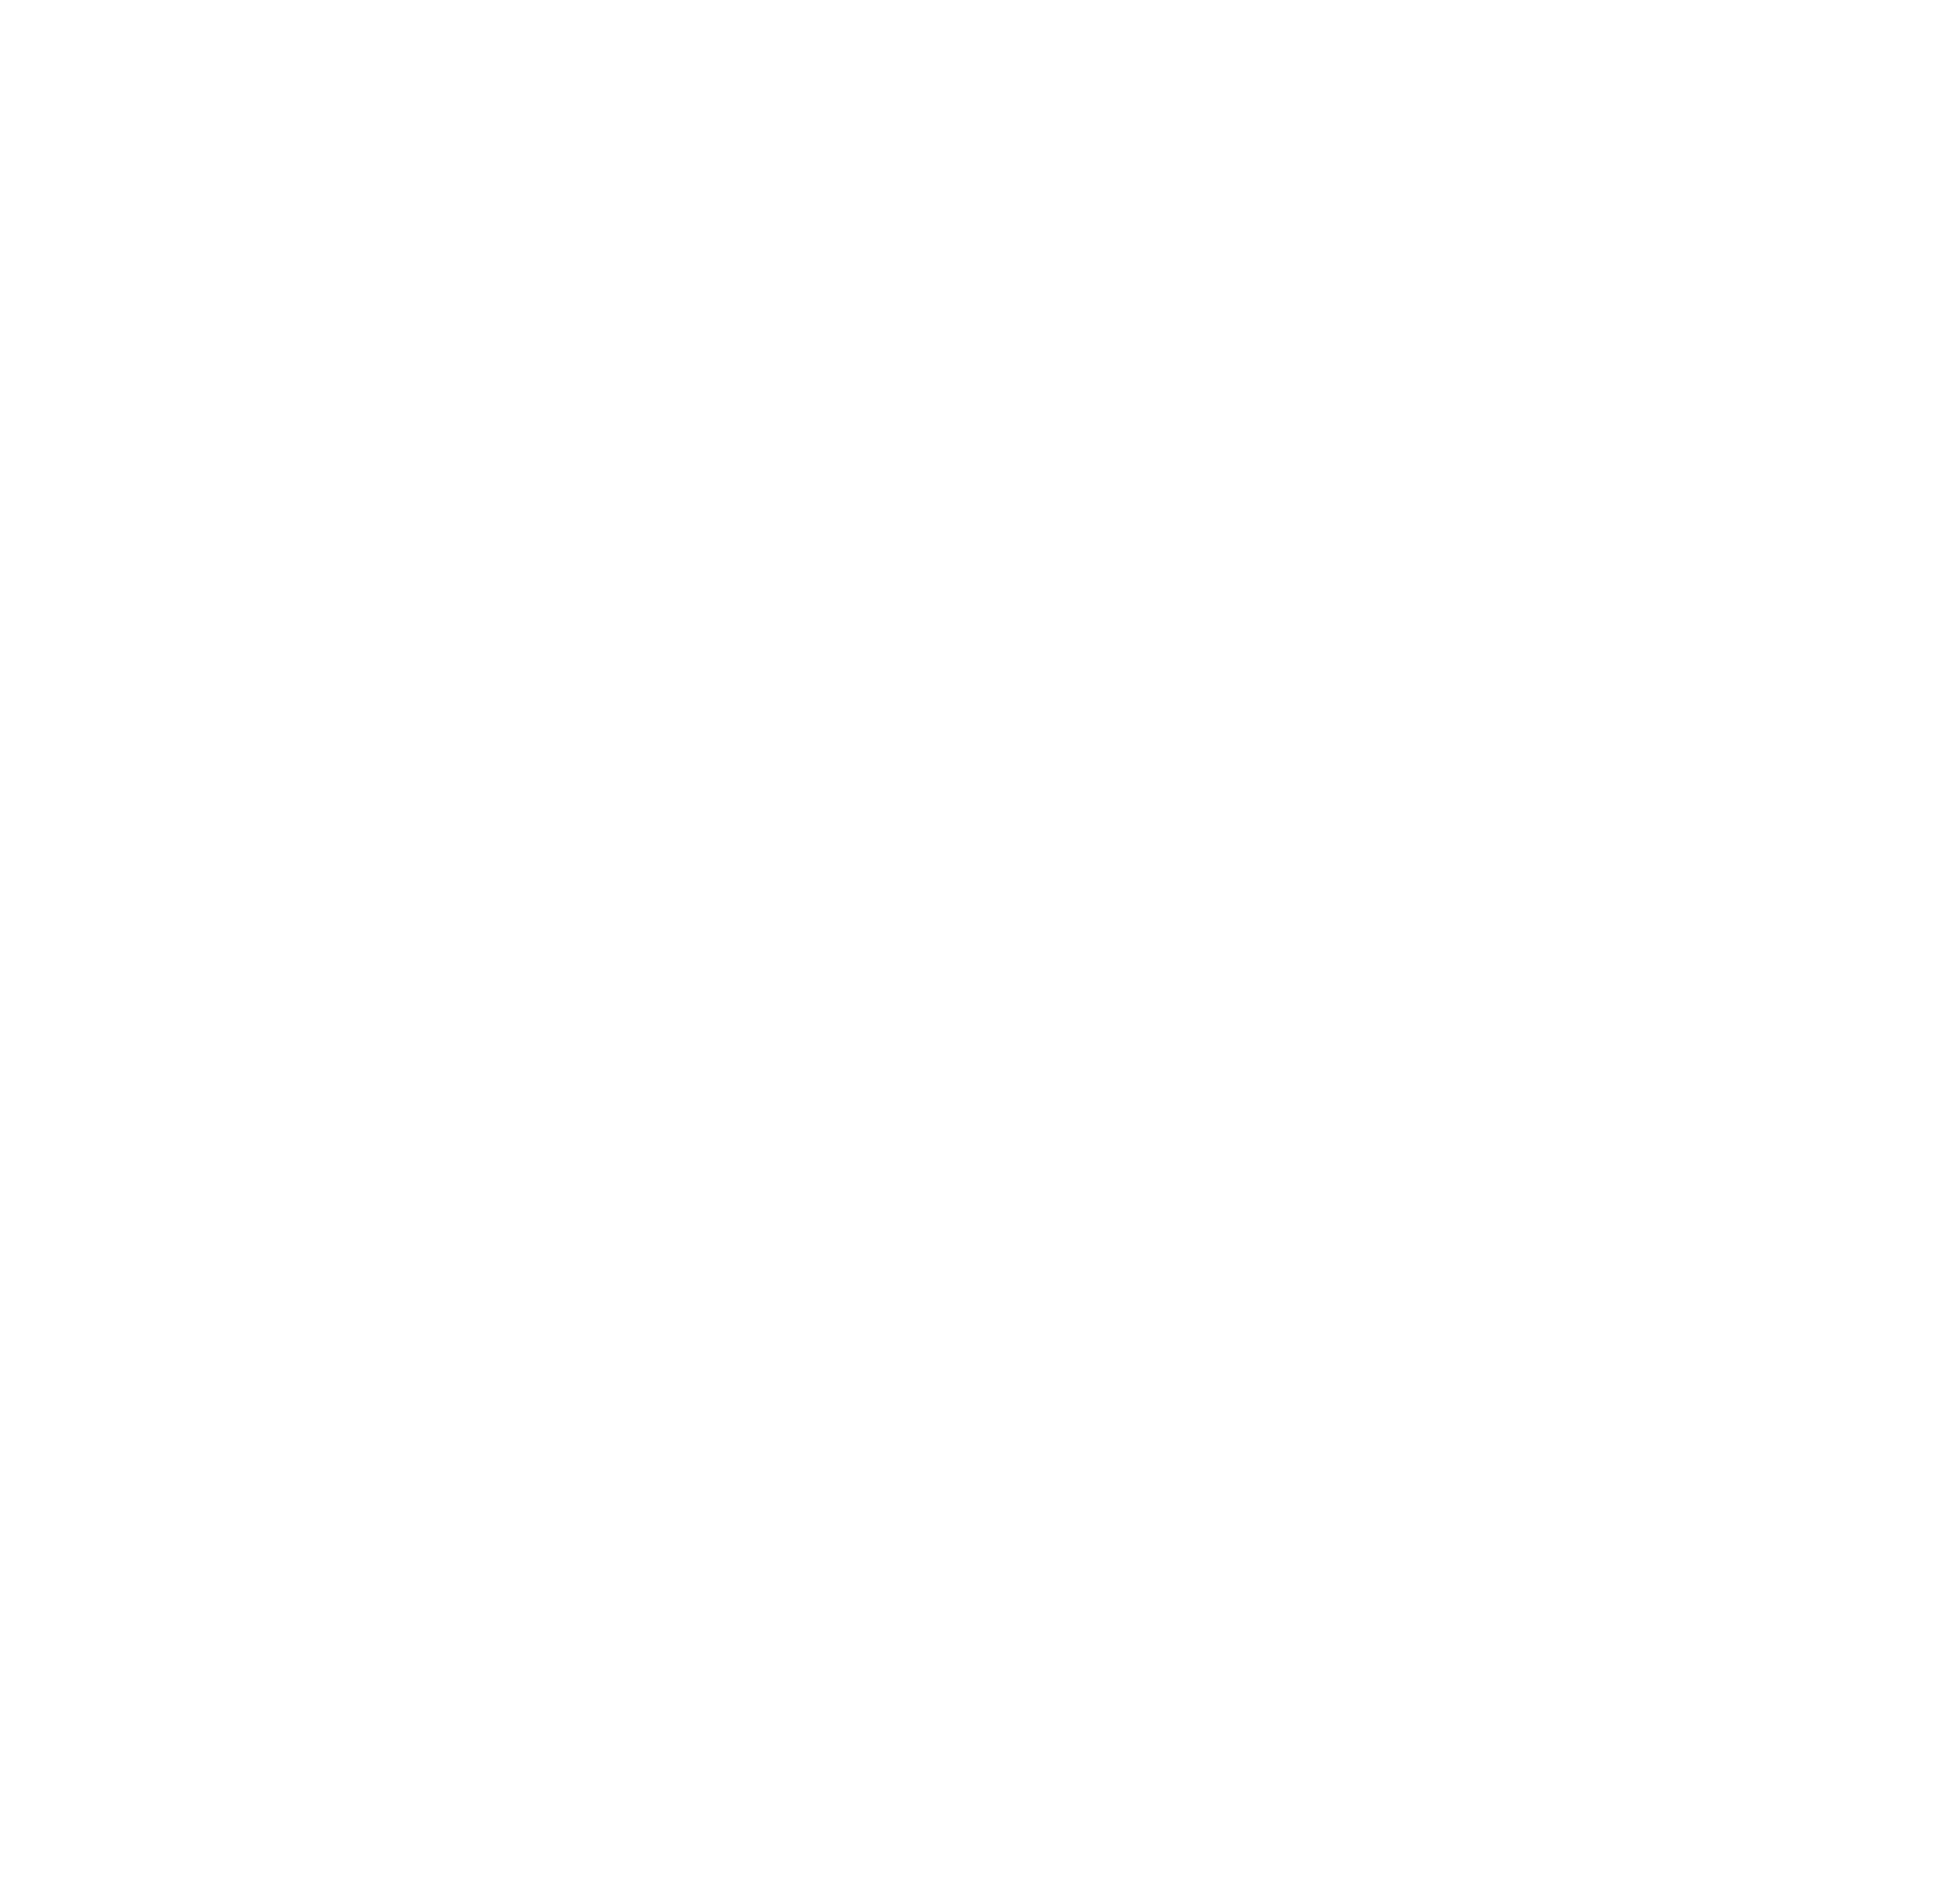 OlsenMultimediaDKLogoHvid0bars